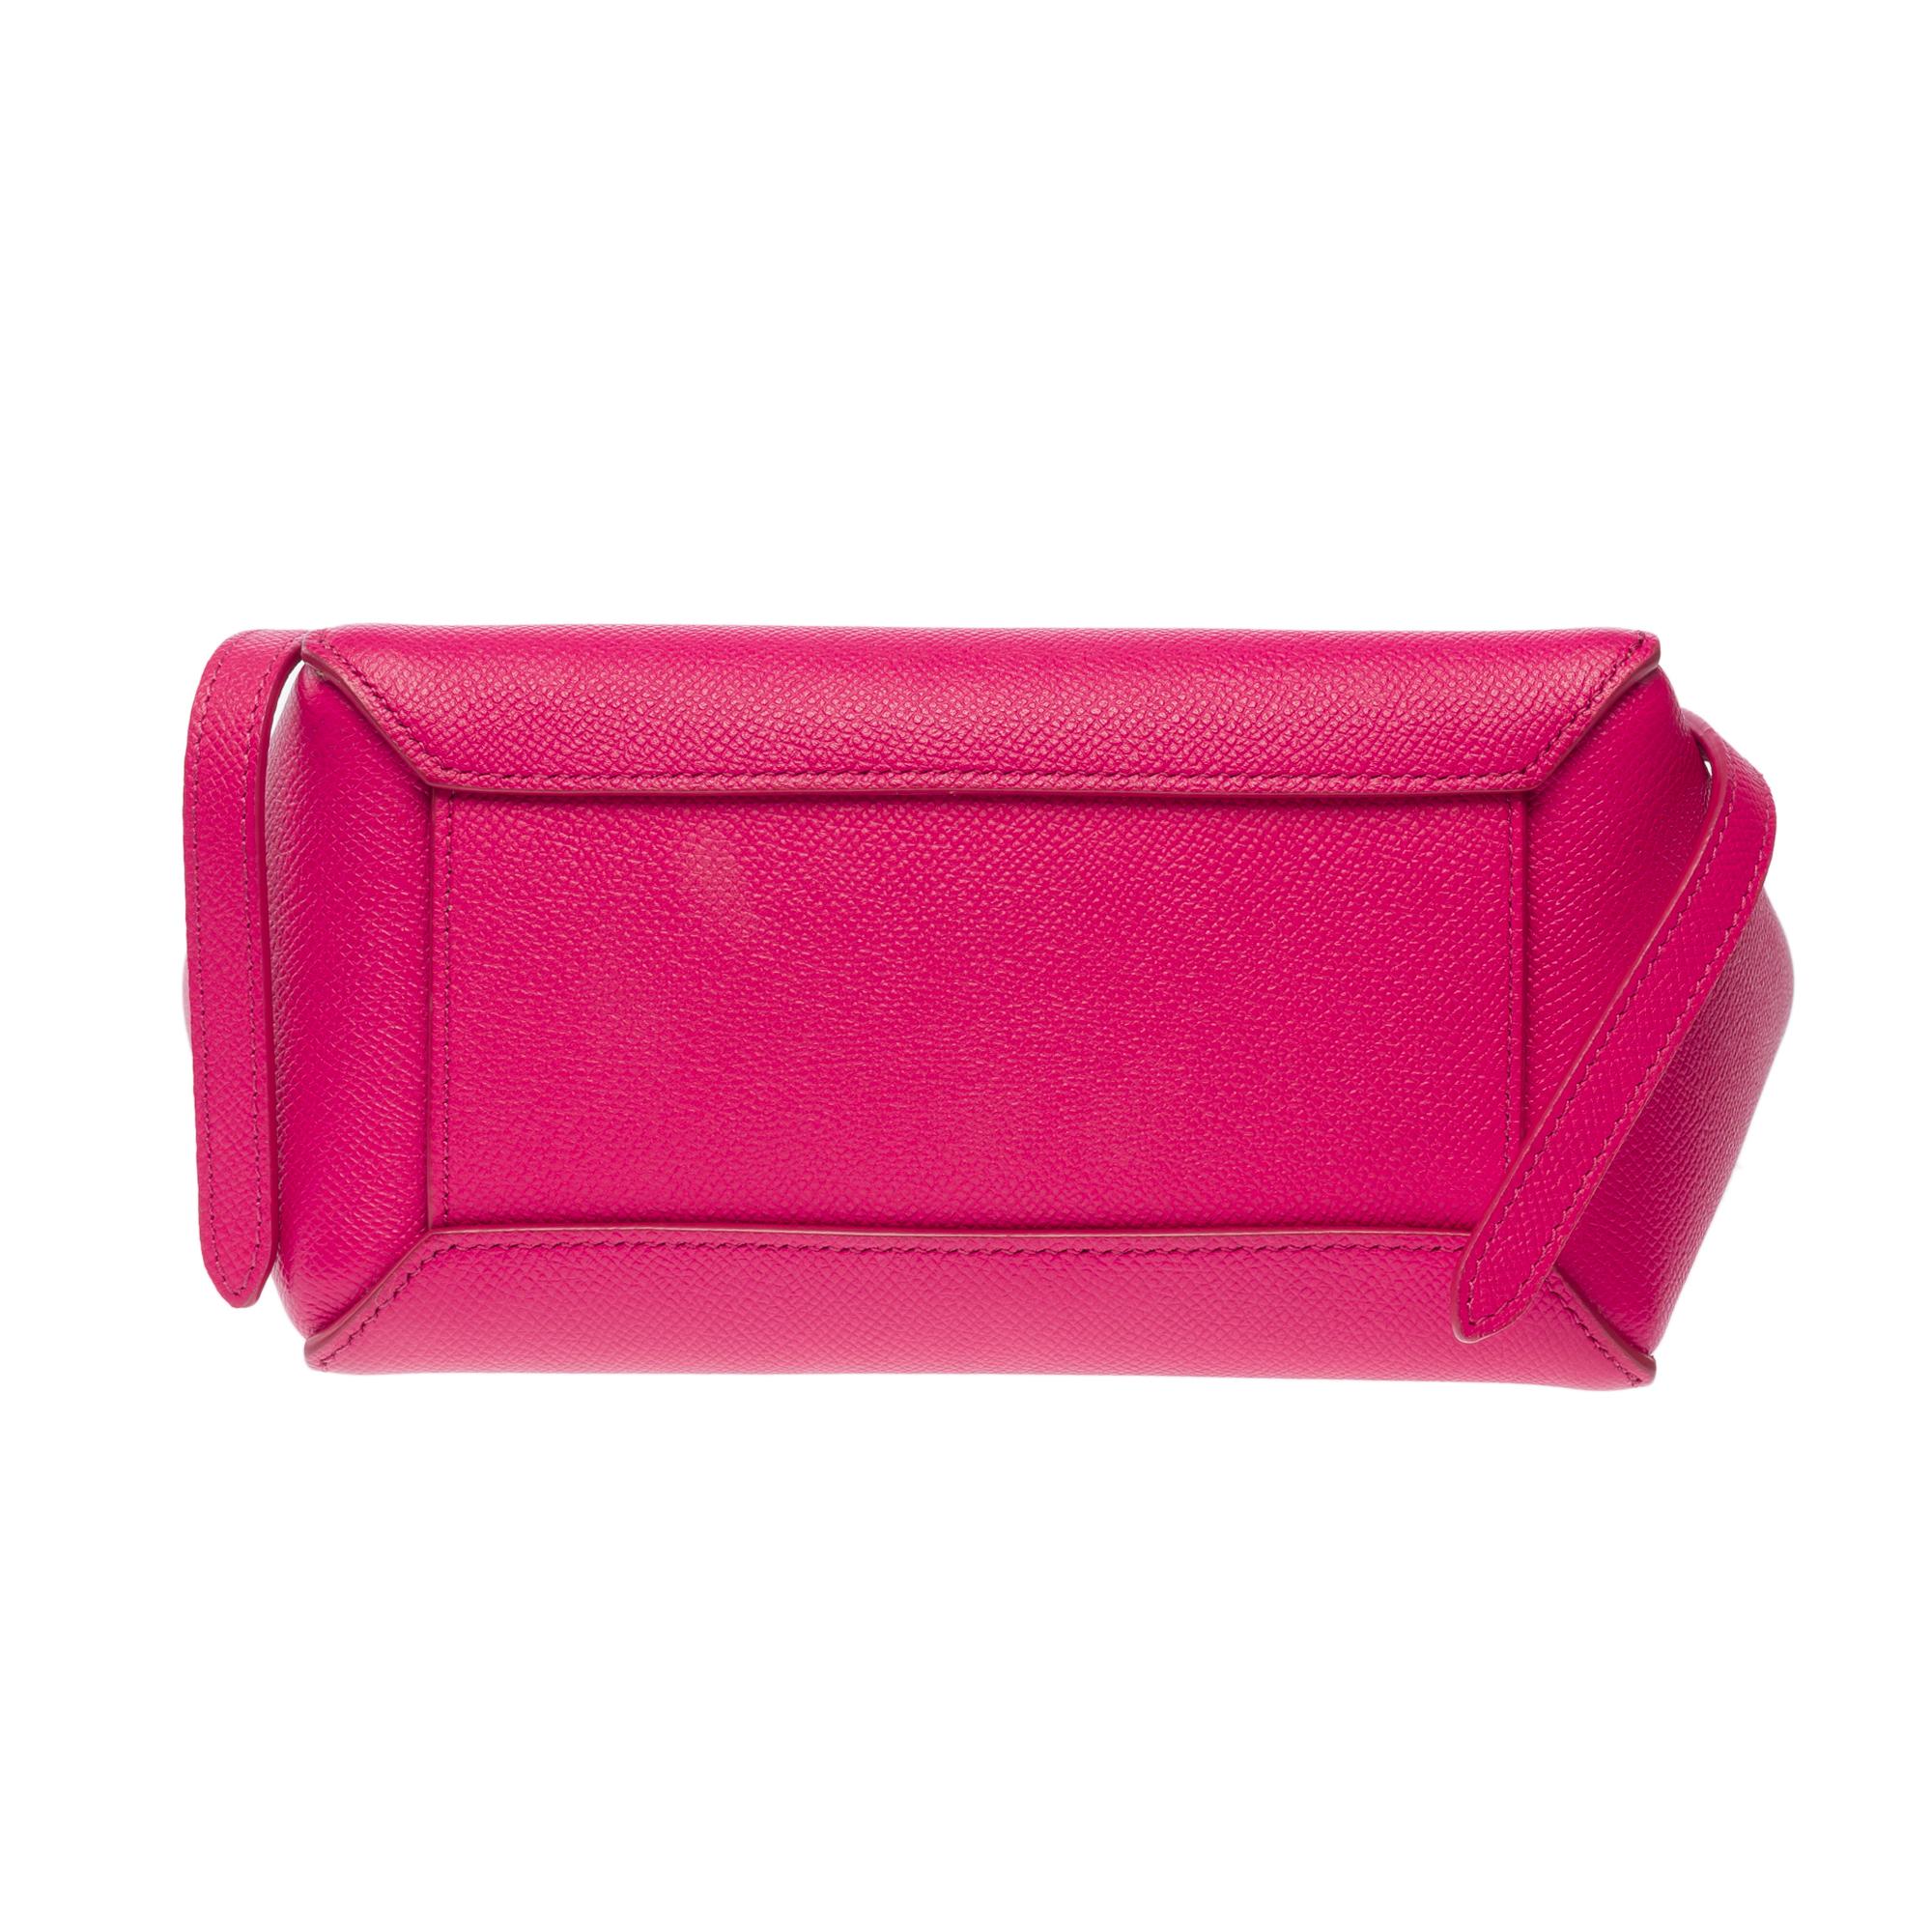 Celine Belt Nano handbag strap in pink calf leather, GHW For Sale 7